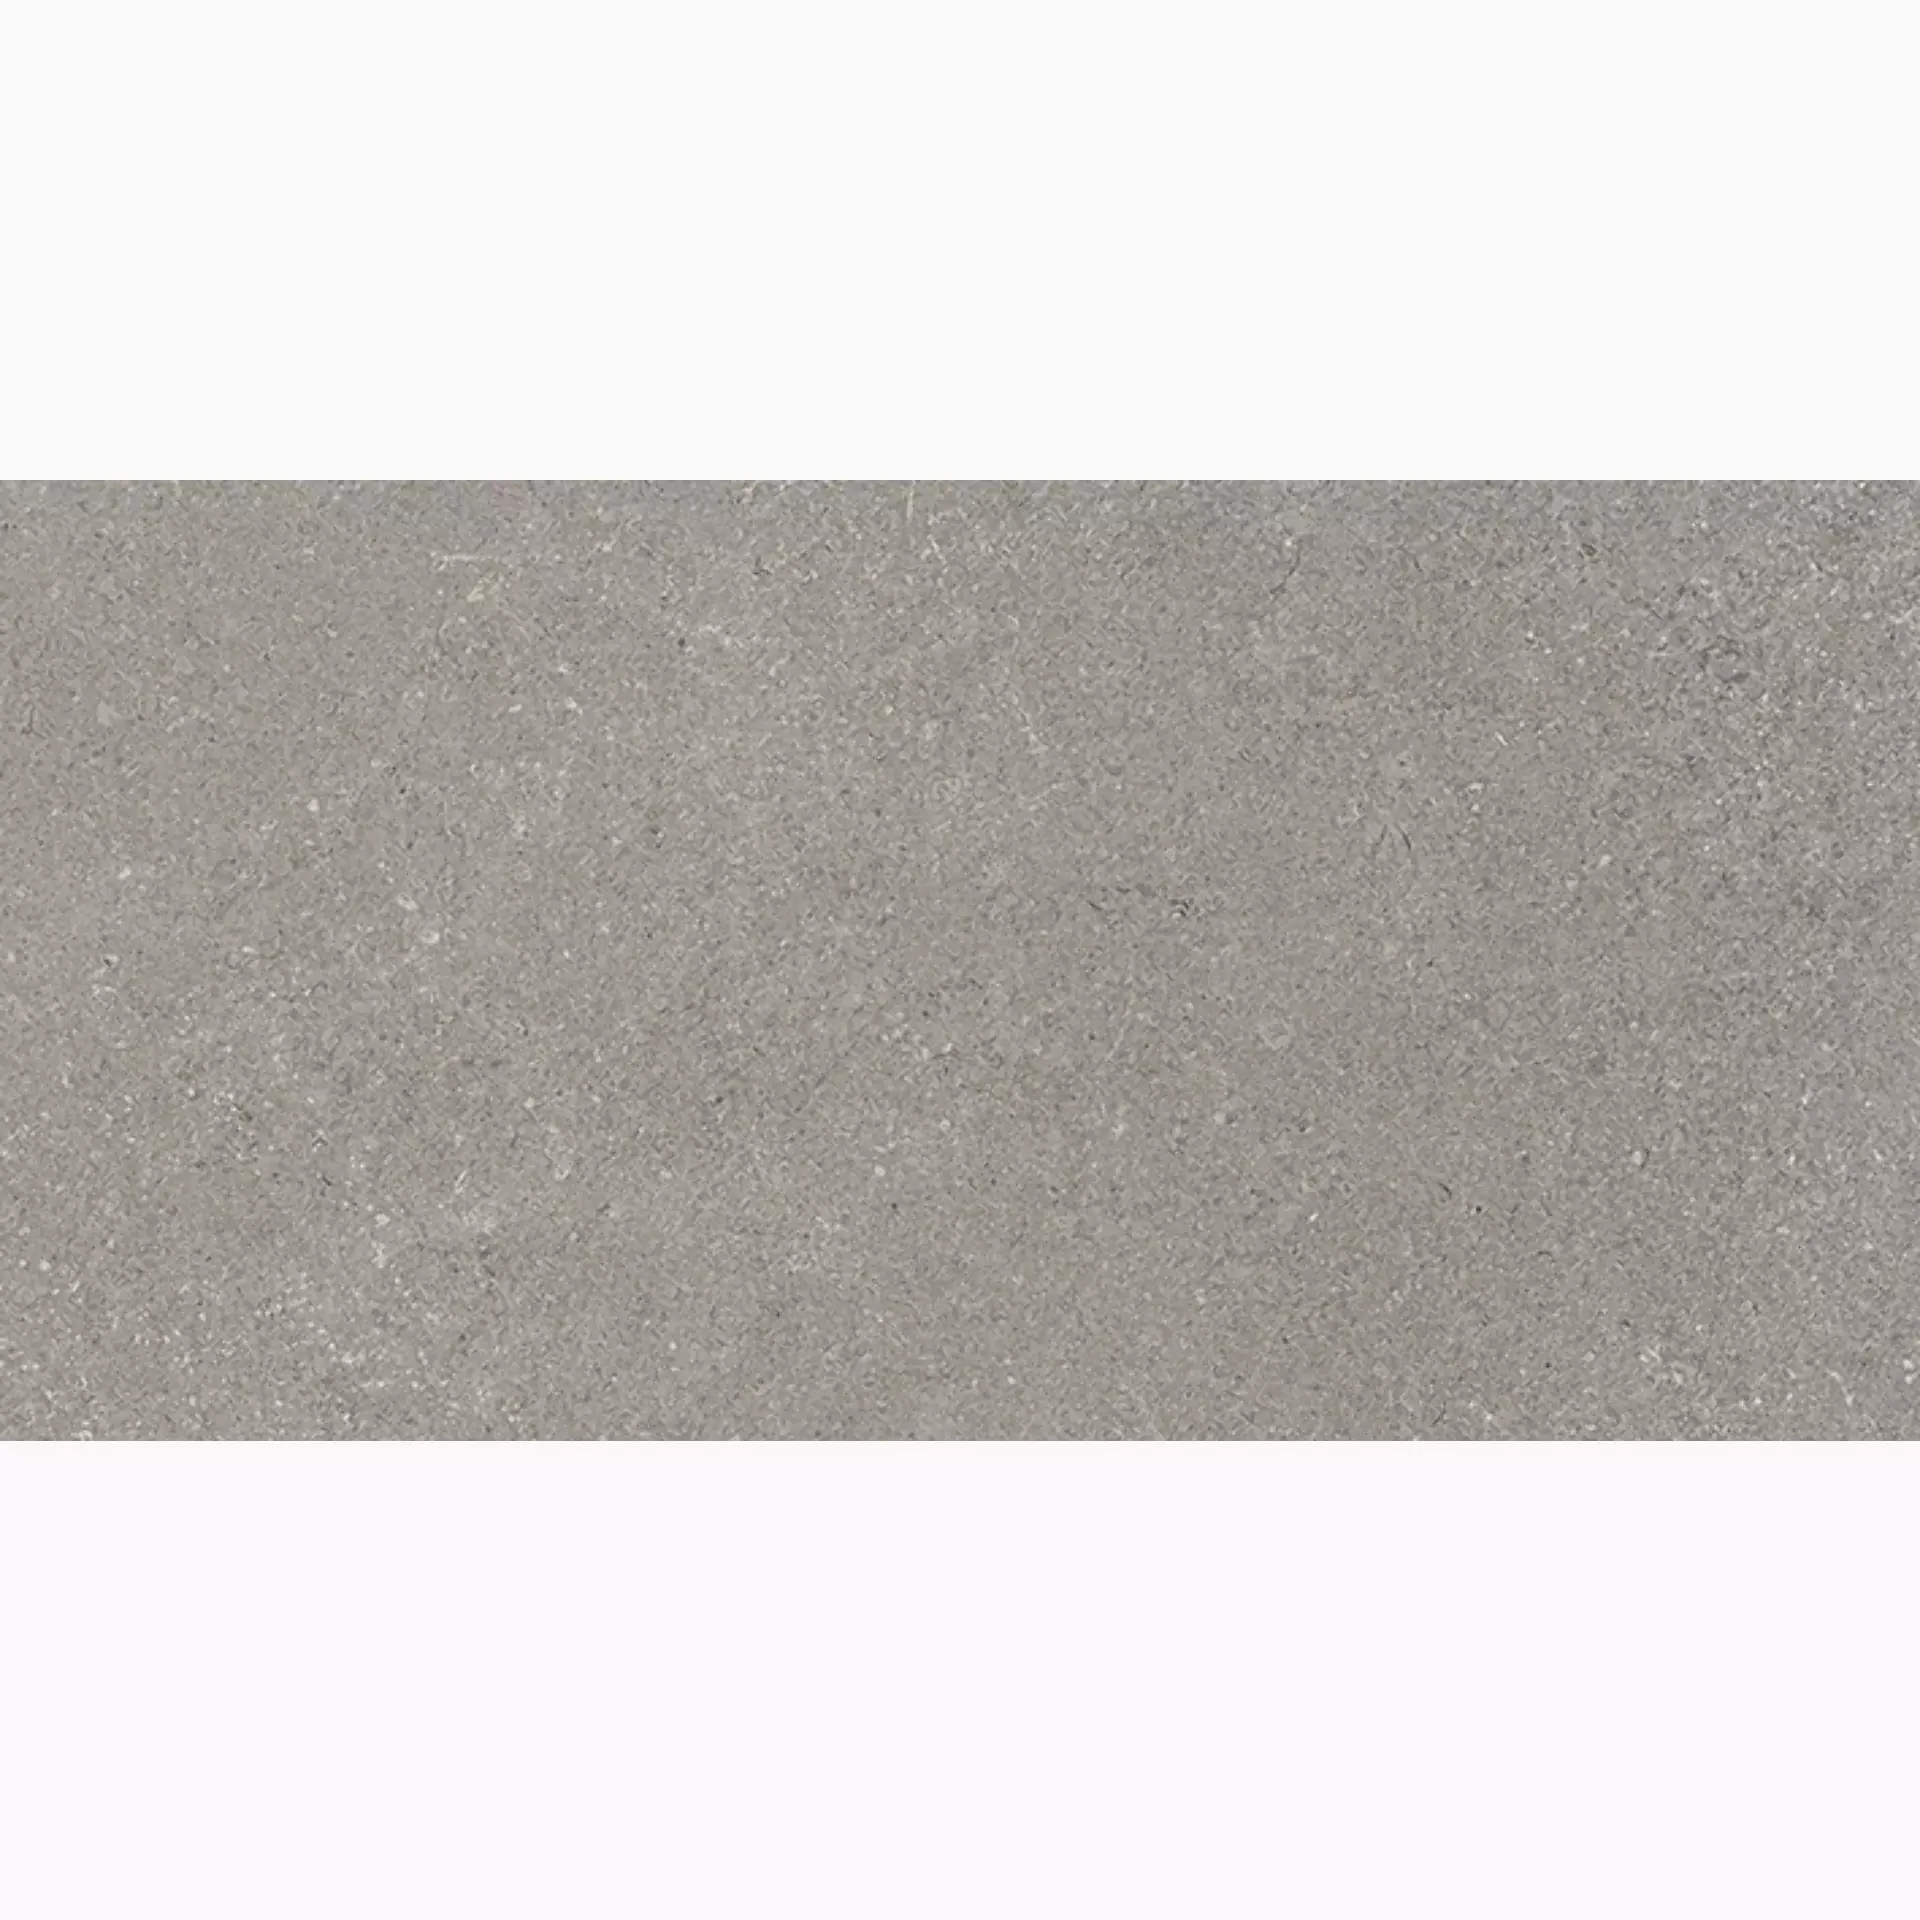 Wandfliese,Bodenfliese Villeroy & Boch Lucca Stone Matt Stone 2870-LS60 matt 30x60cm rektifiziert 9mm